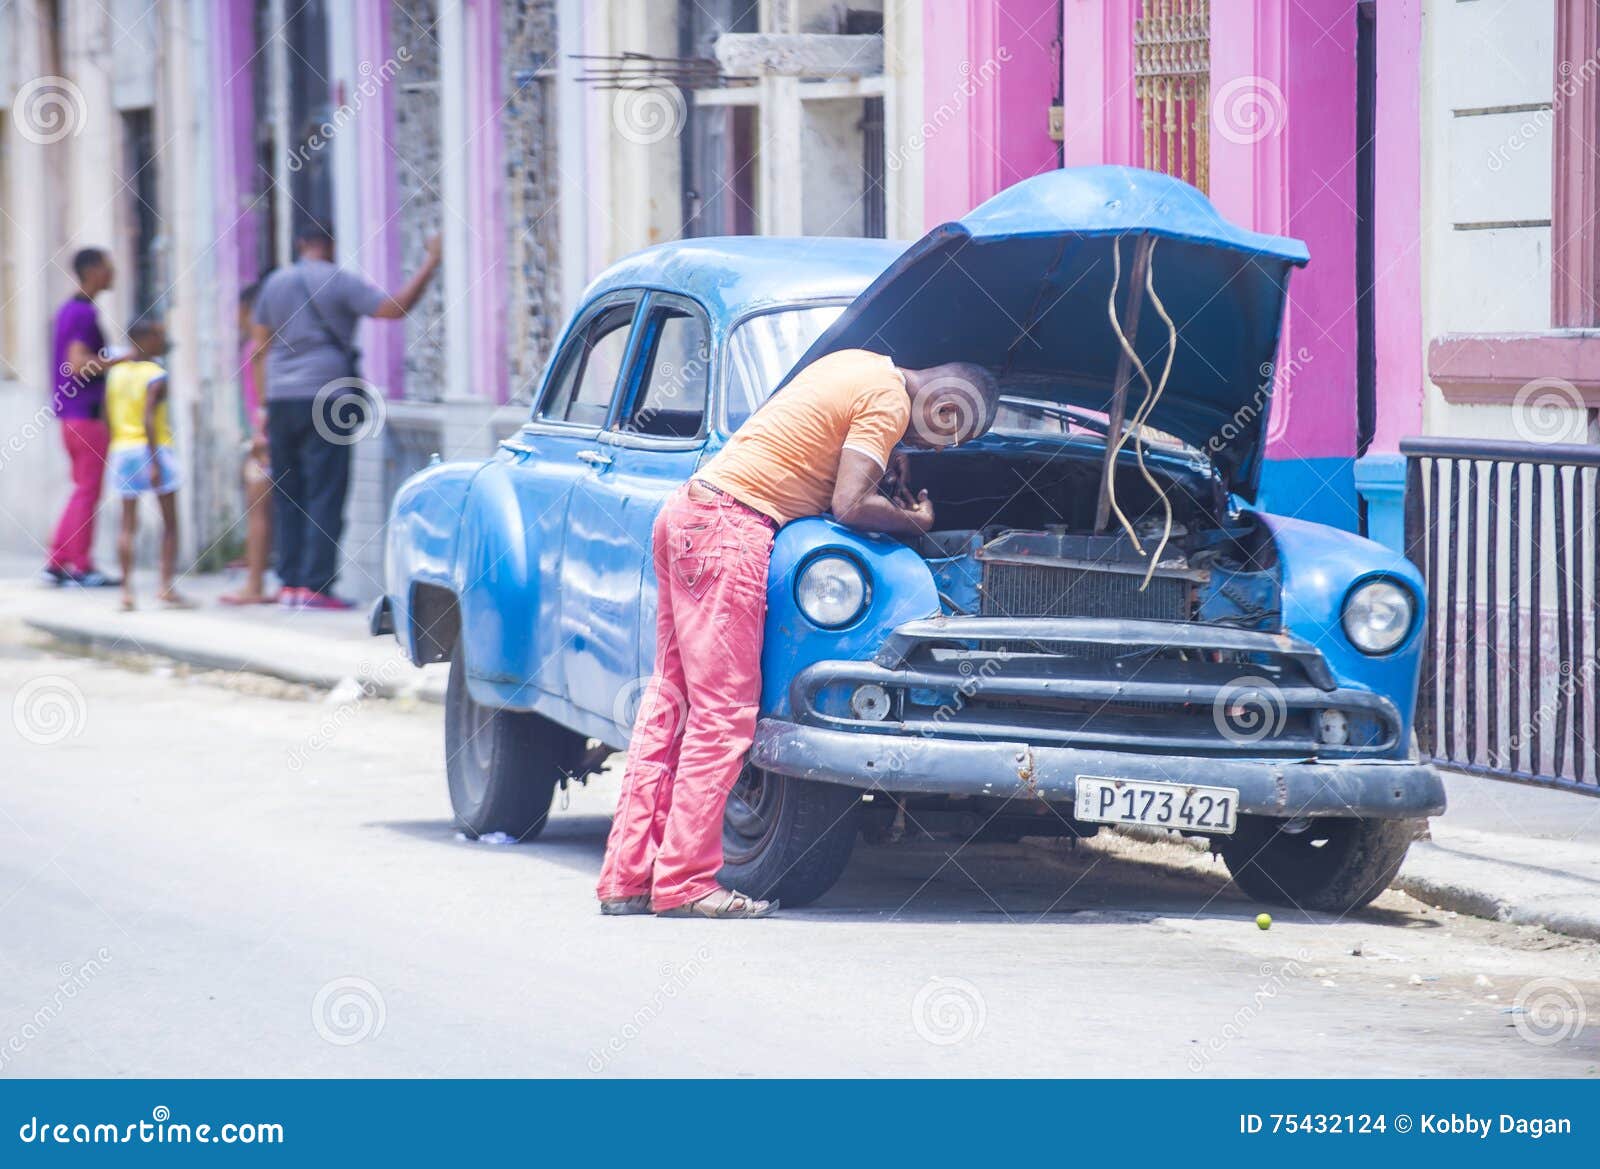 Oude Klassieke Auto in Cuba. HAVANA, CUBA - JULI 18: Oude klassieke Amerikaanse auto op één van de straten van Havana op 18 Juli 2016 Er zijn bijna 60.000 uitstekende Amerikaanse auto's in Cuba